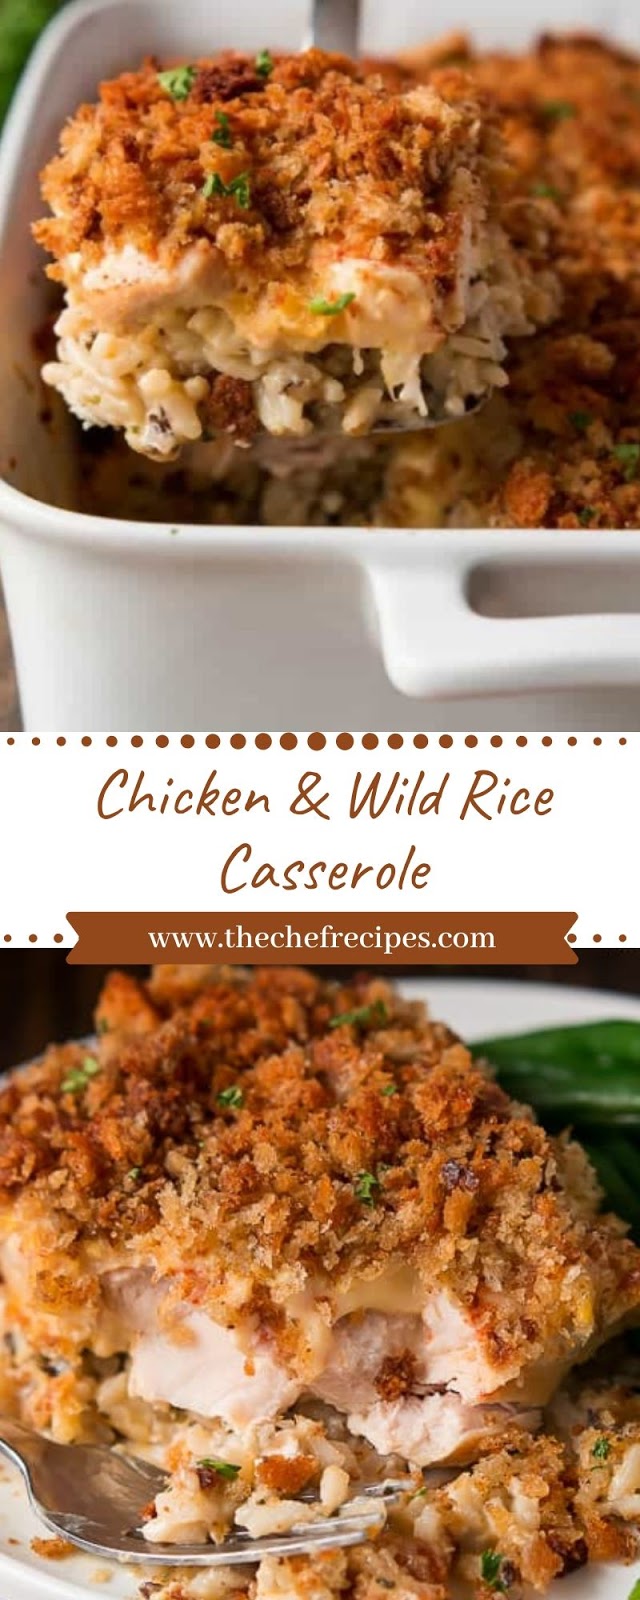 Chicken & Wild Rice Casserole